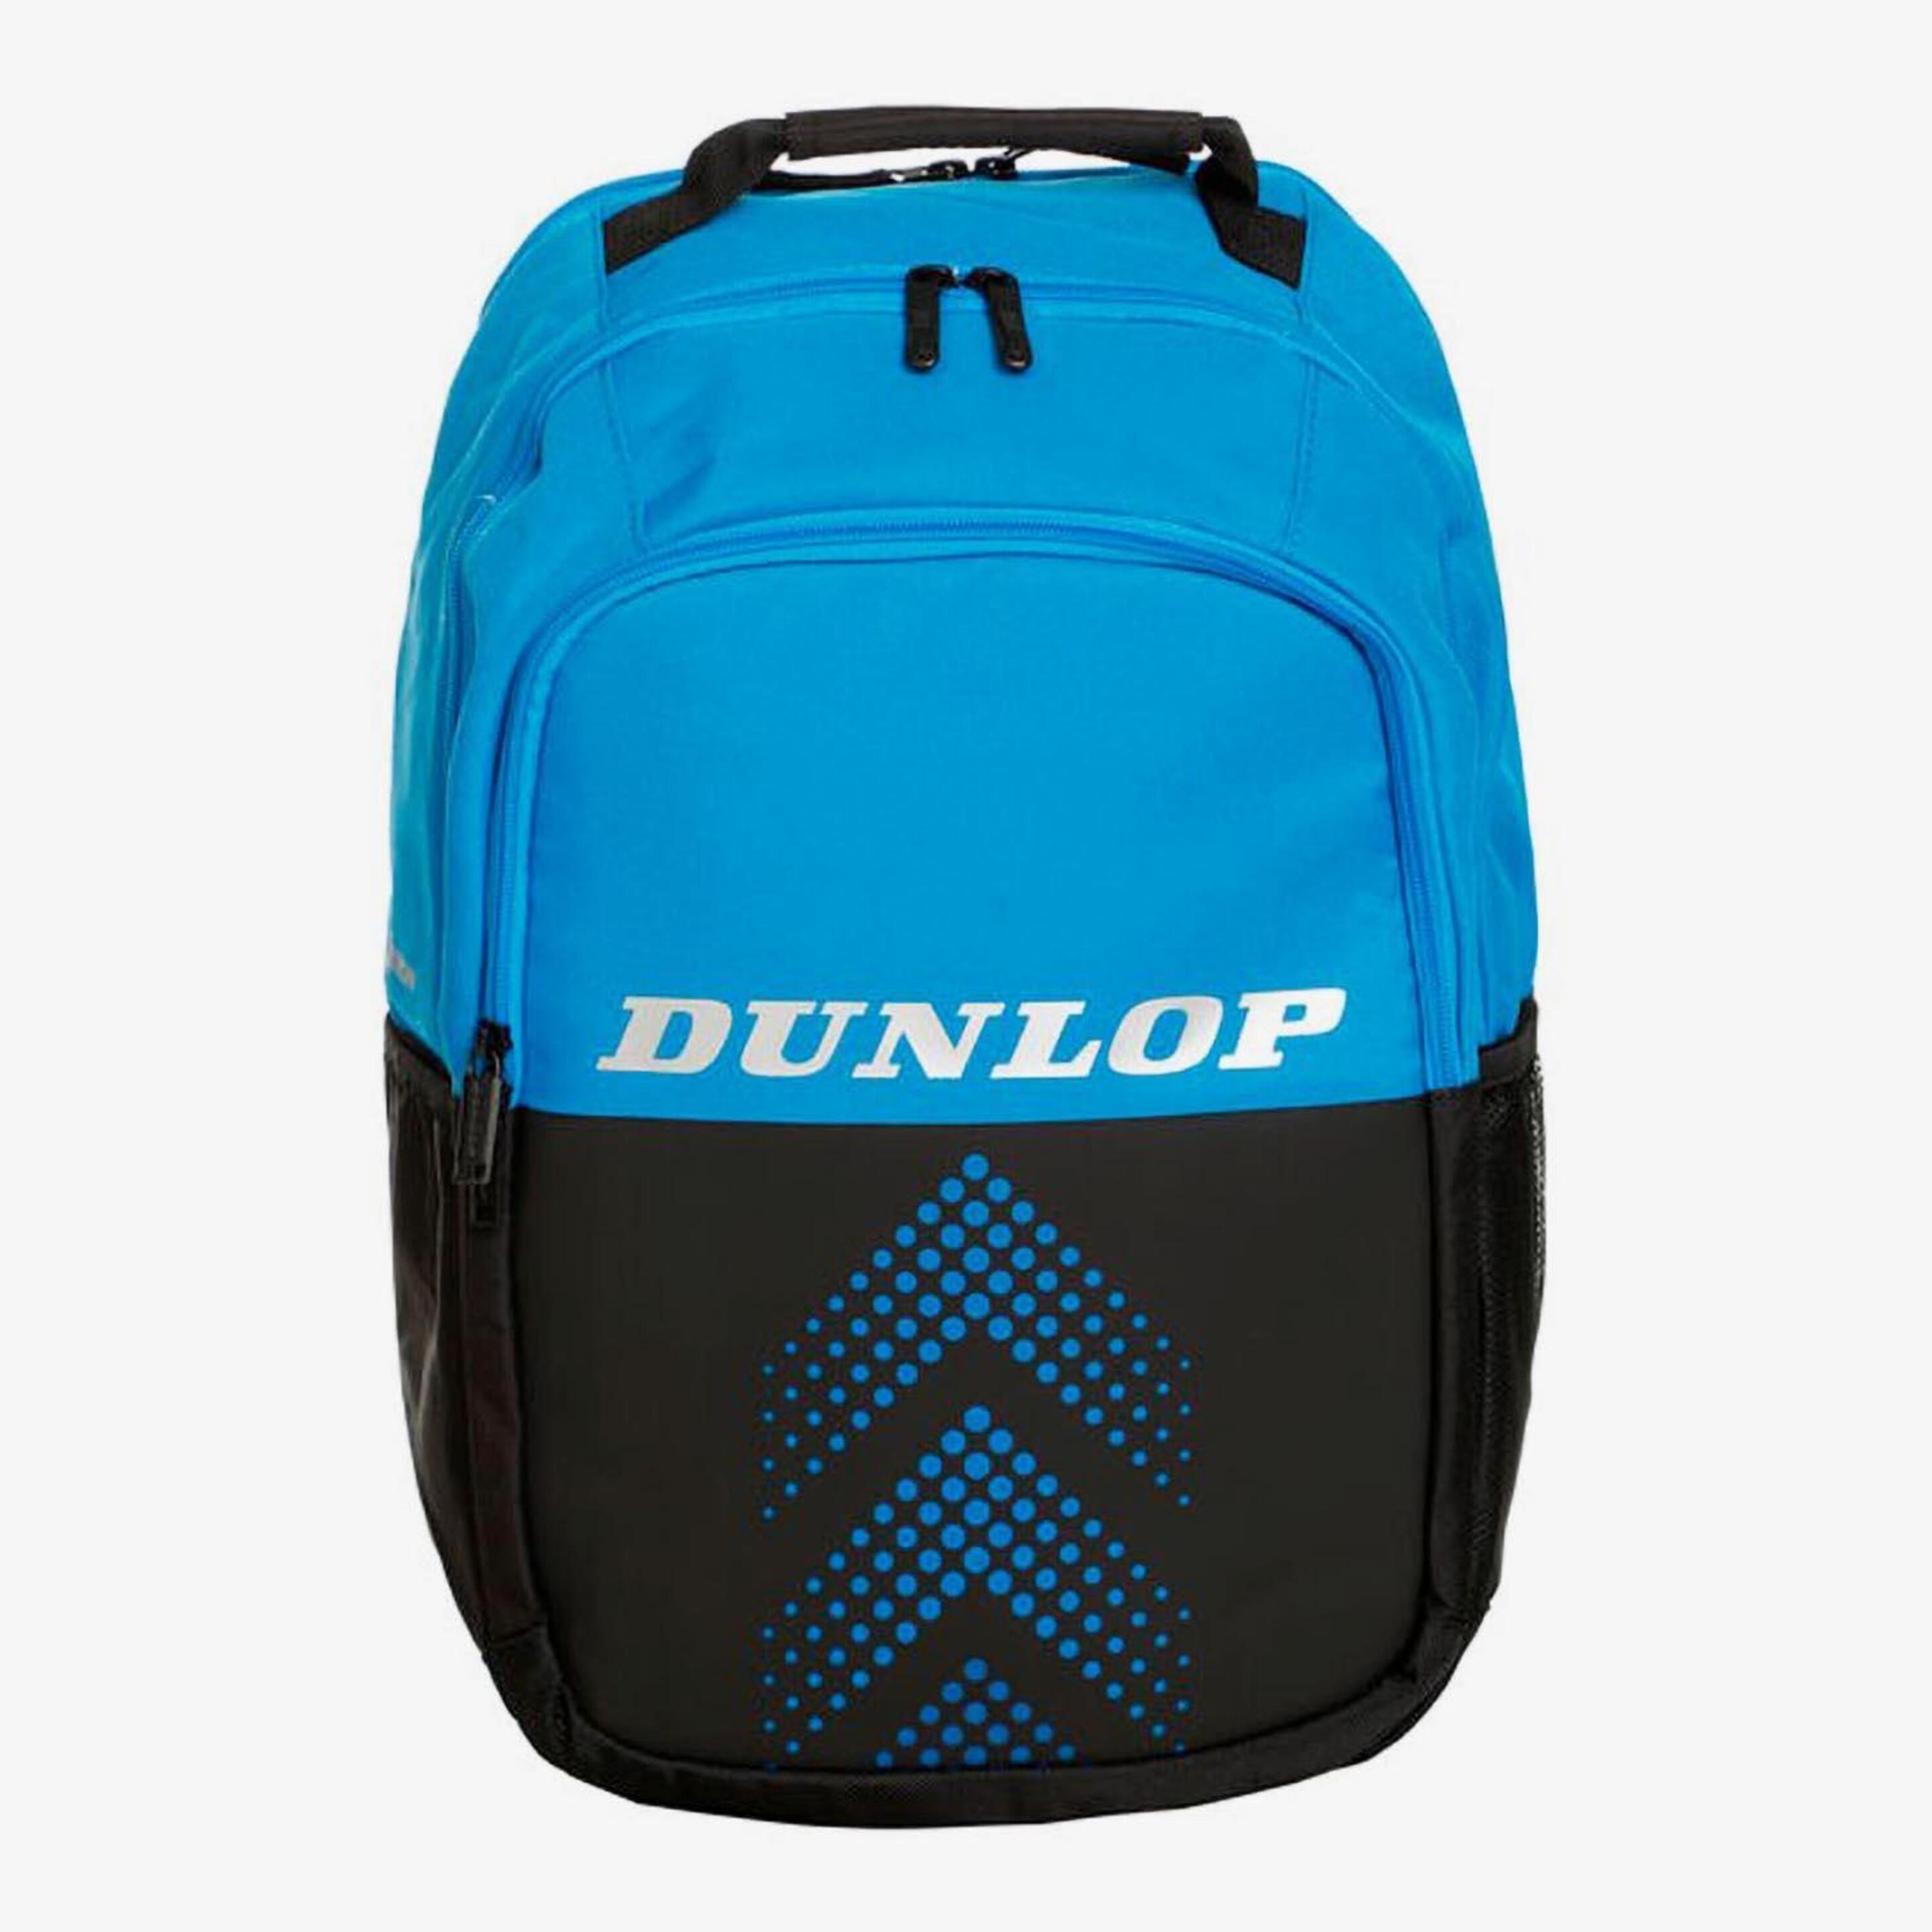 Dunlop Fx-performance